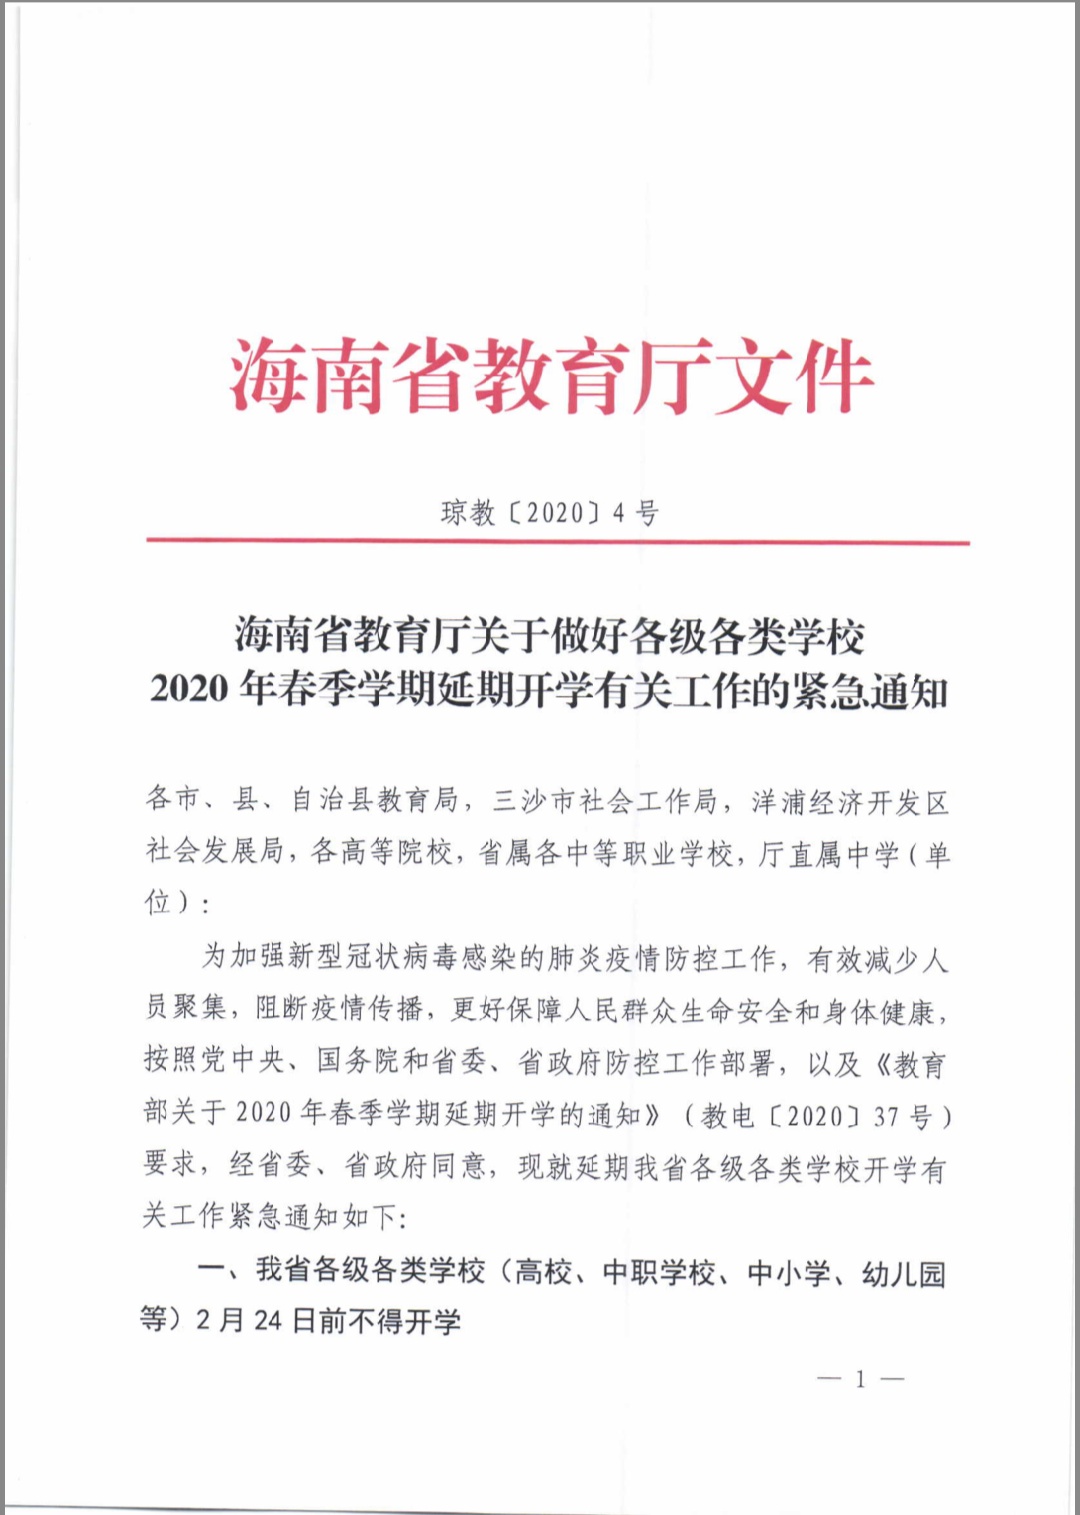 海南省教育厅关于做好各类学校2020年春季学期延期开学有关工作的紧急通知